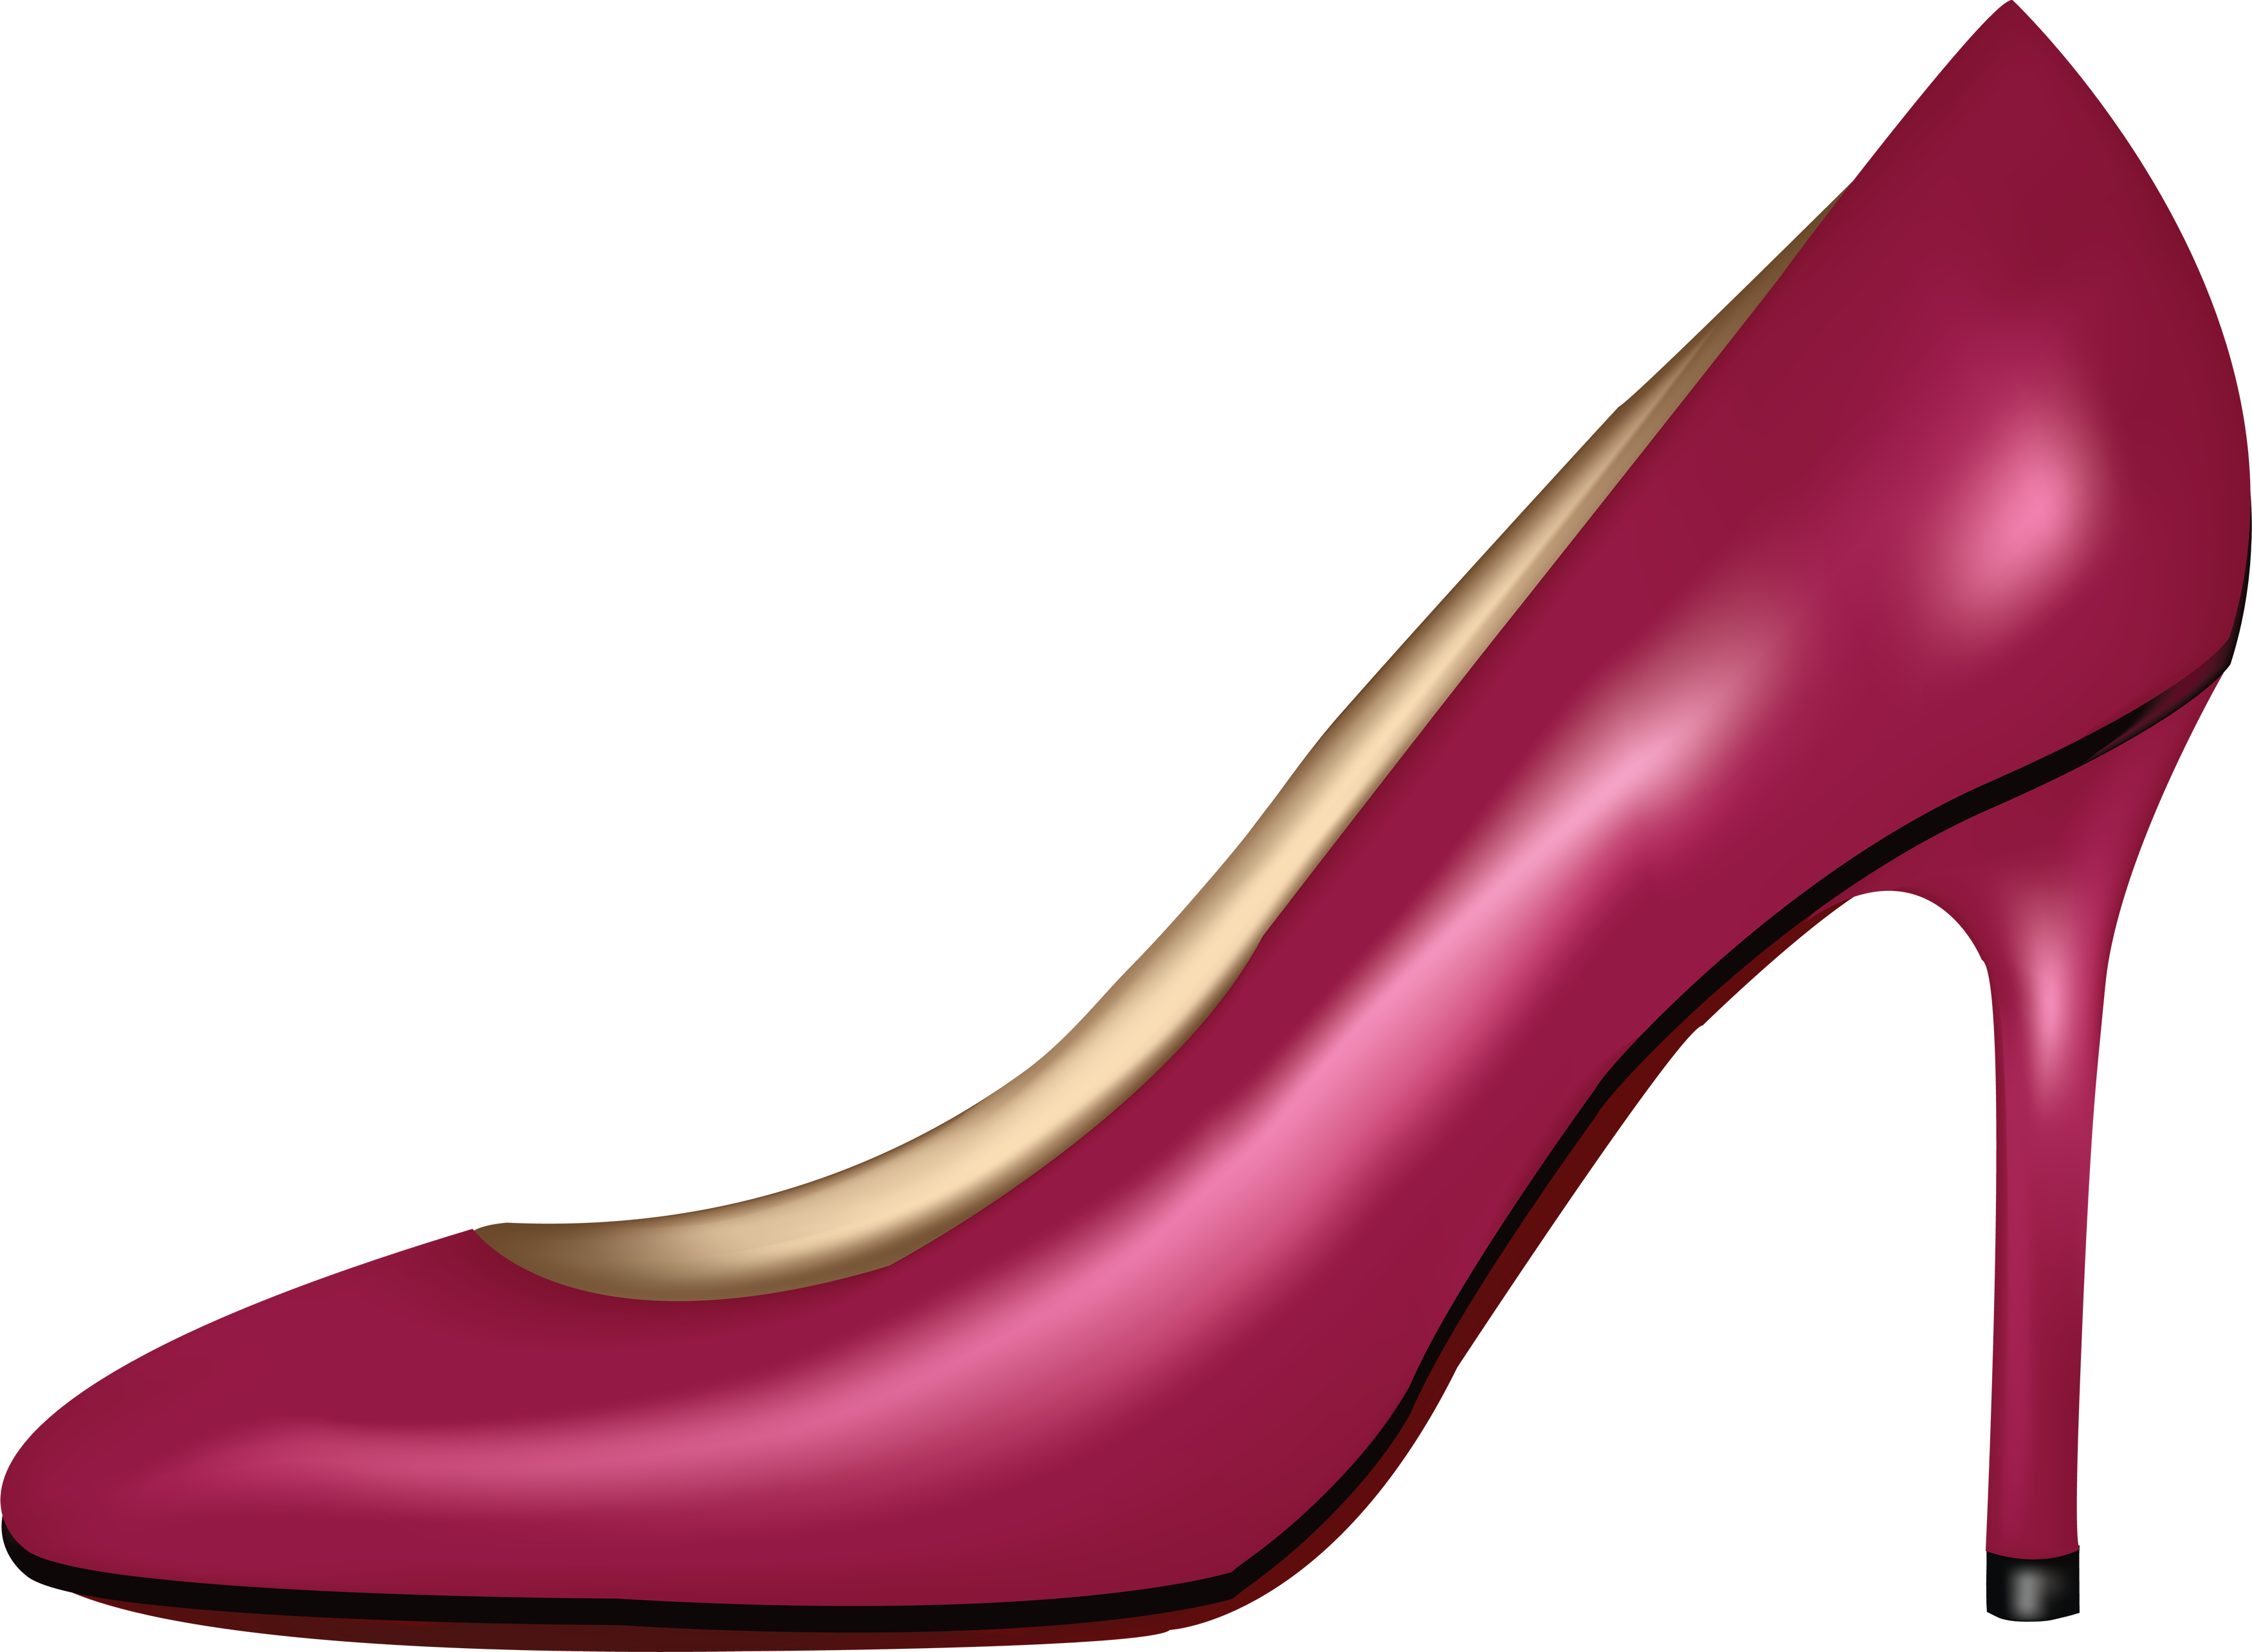 Pink Women Shoe PNG Image